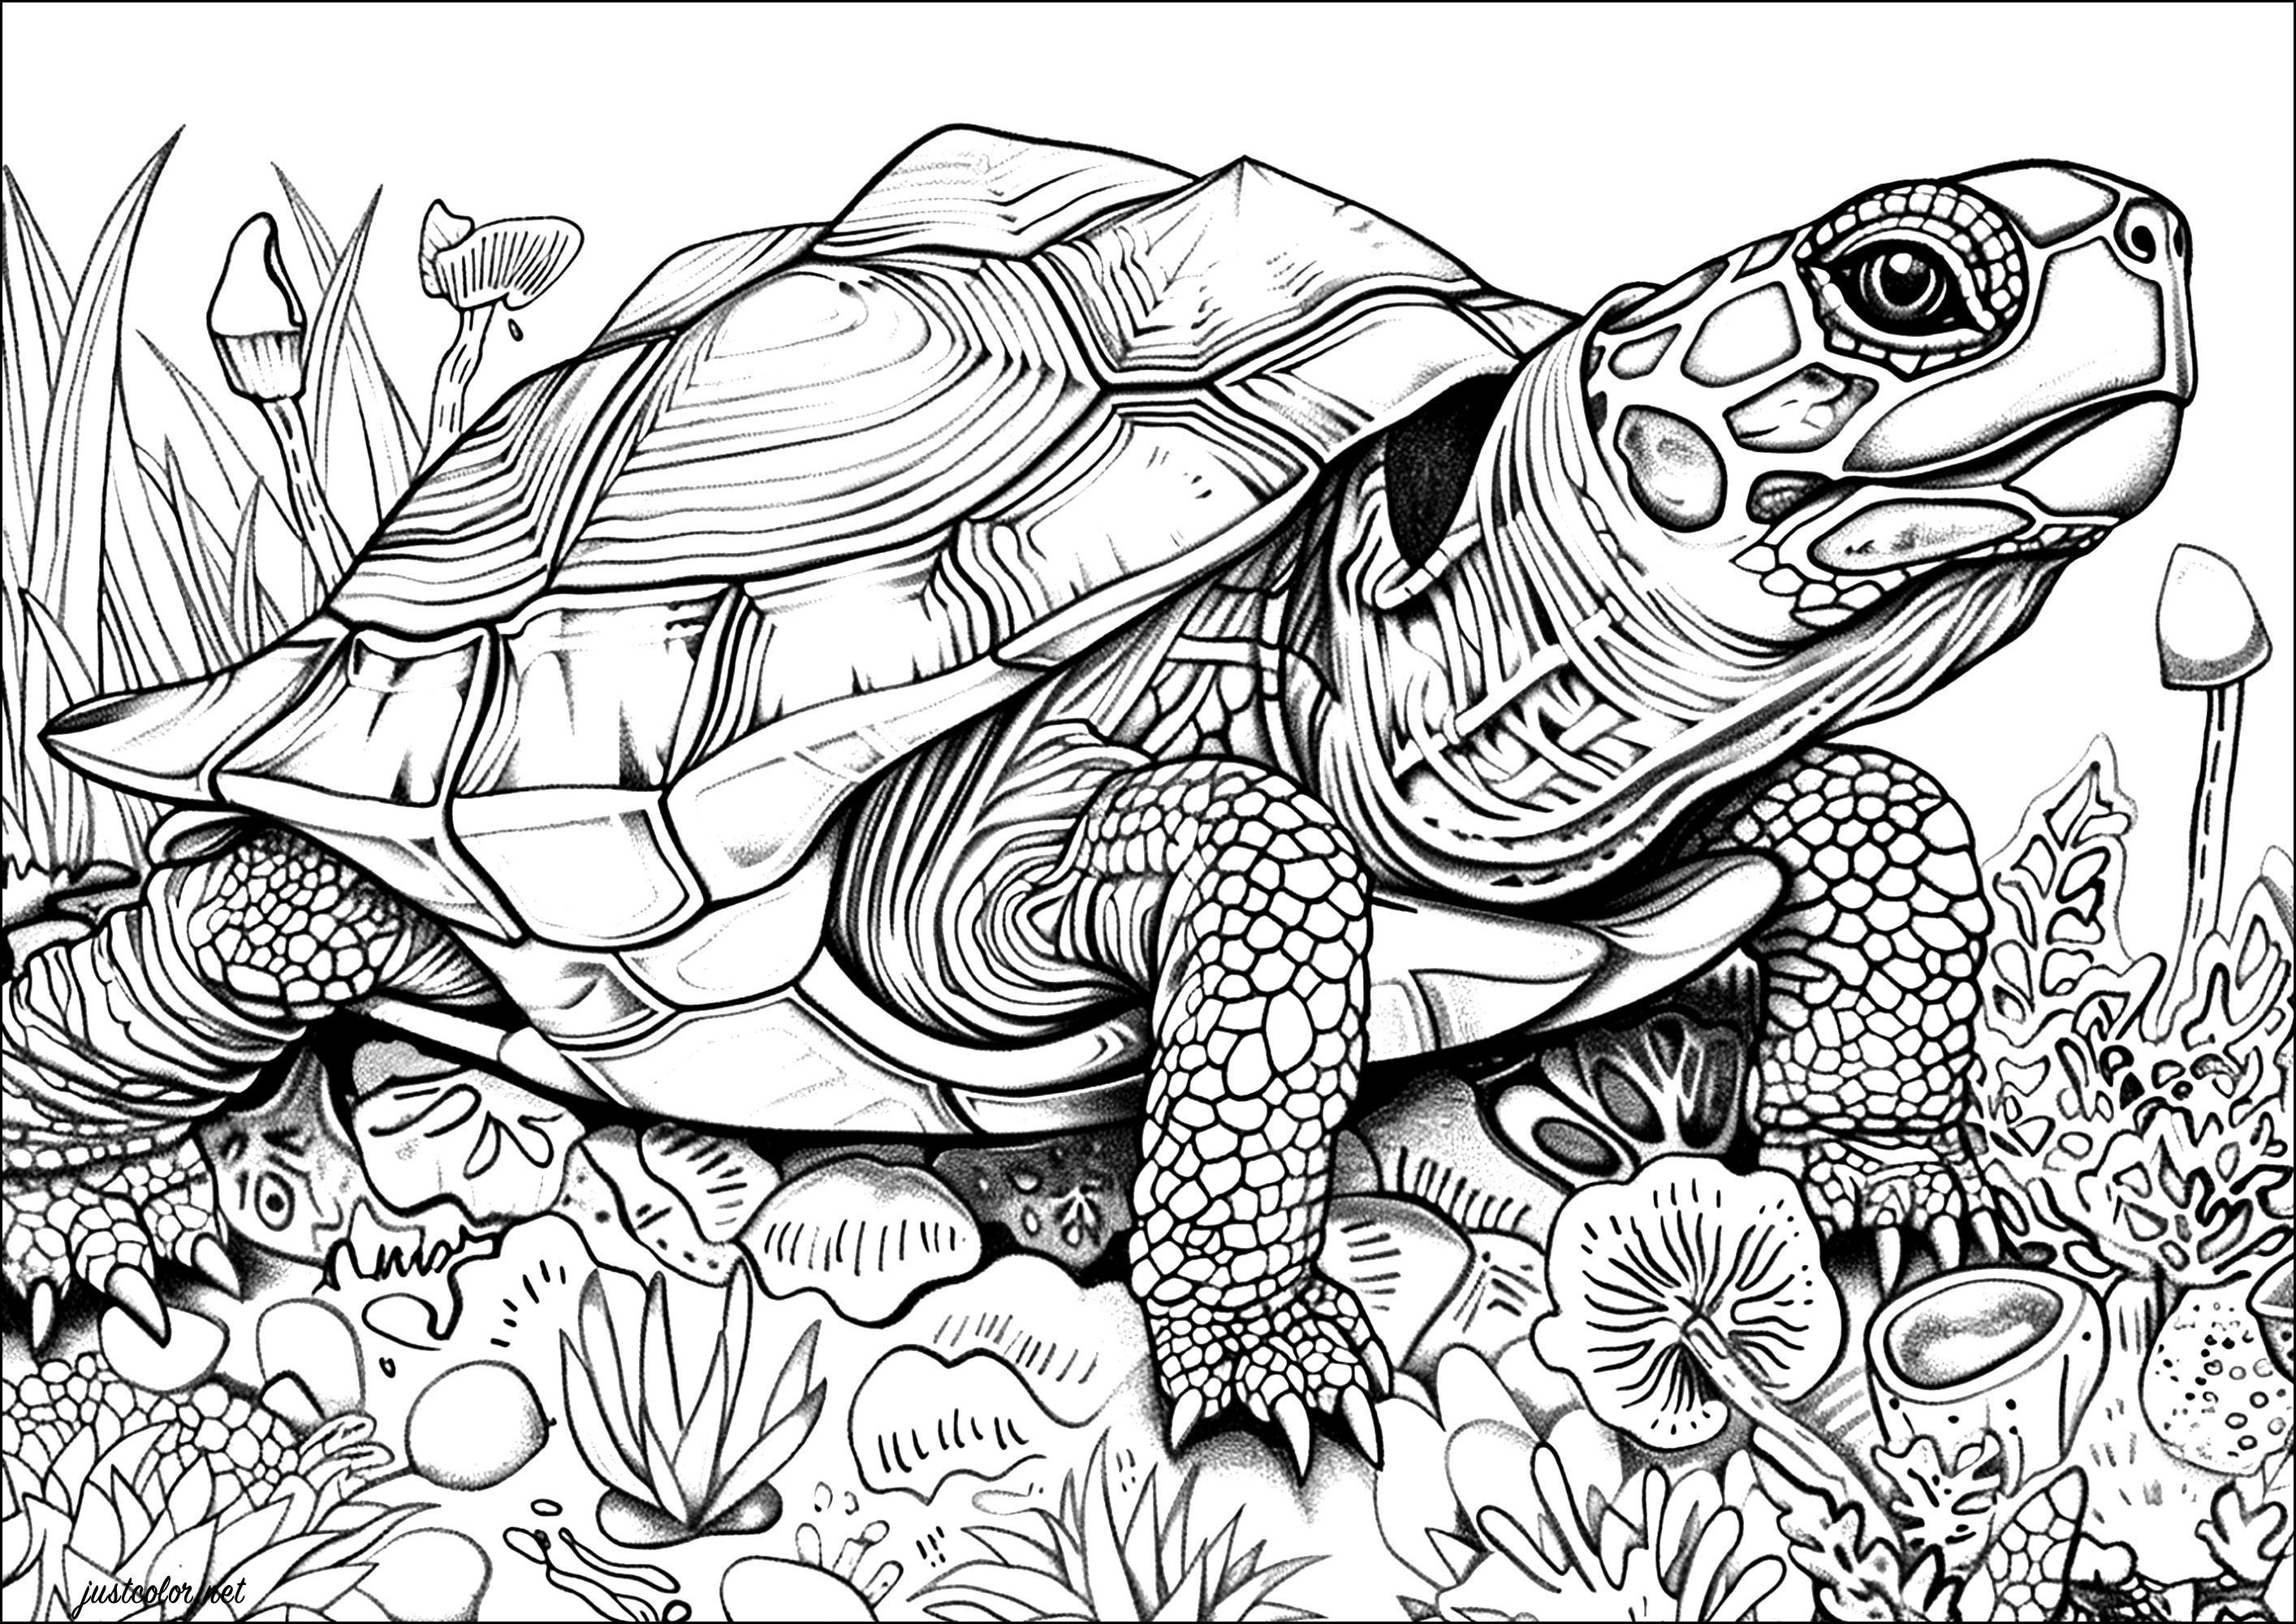 Coloriage de tortue très réaliste, avec nombreux détails à colorier. Les écailles de la carapace de cette tortue sont minutieusement représentées, donnant l'impression de pouvoir les toucher du bout des doigts.Prenez vos crayons de couleur ou feutres et laissez-vous emporter par la beauté de cette majestueuse tortue.